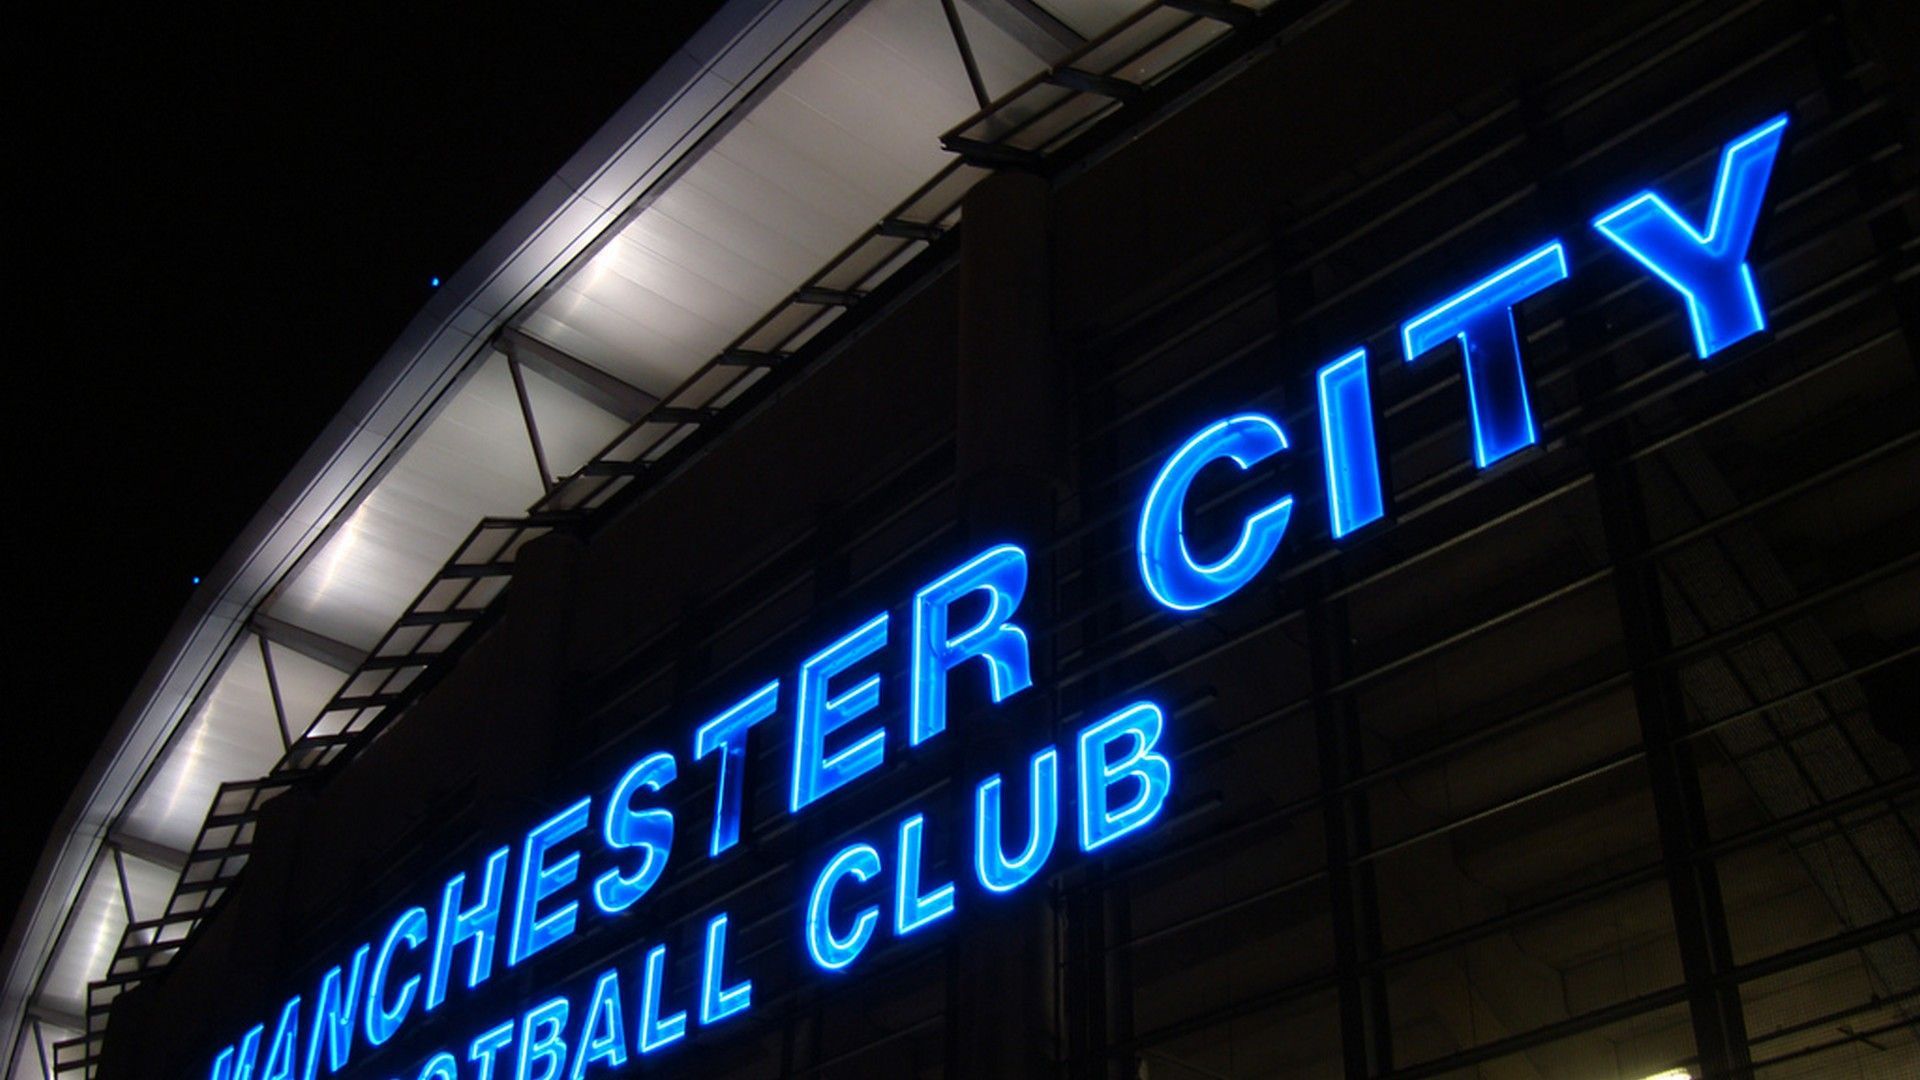 Manchester City HD Wallpaper. Best Football Wallpaper HD. Manchester city football club, Manchester city wallpaper, Manchester city